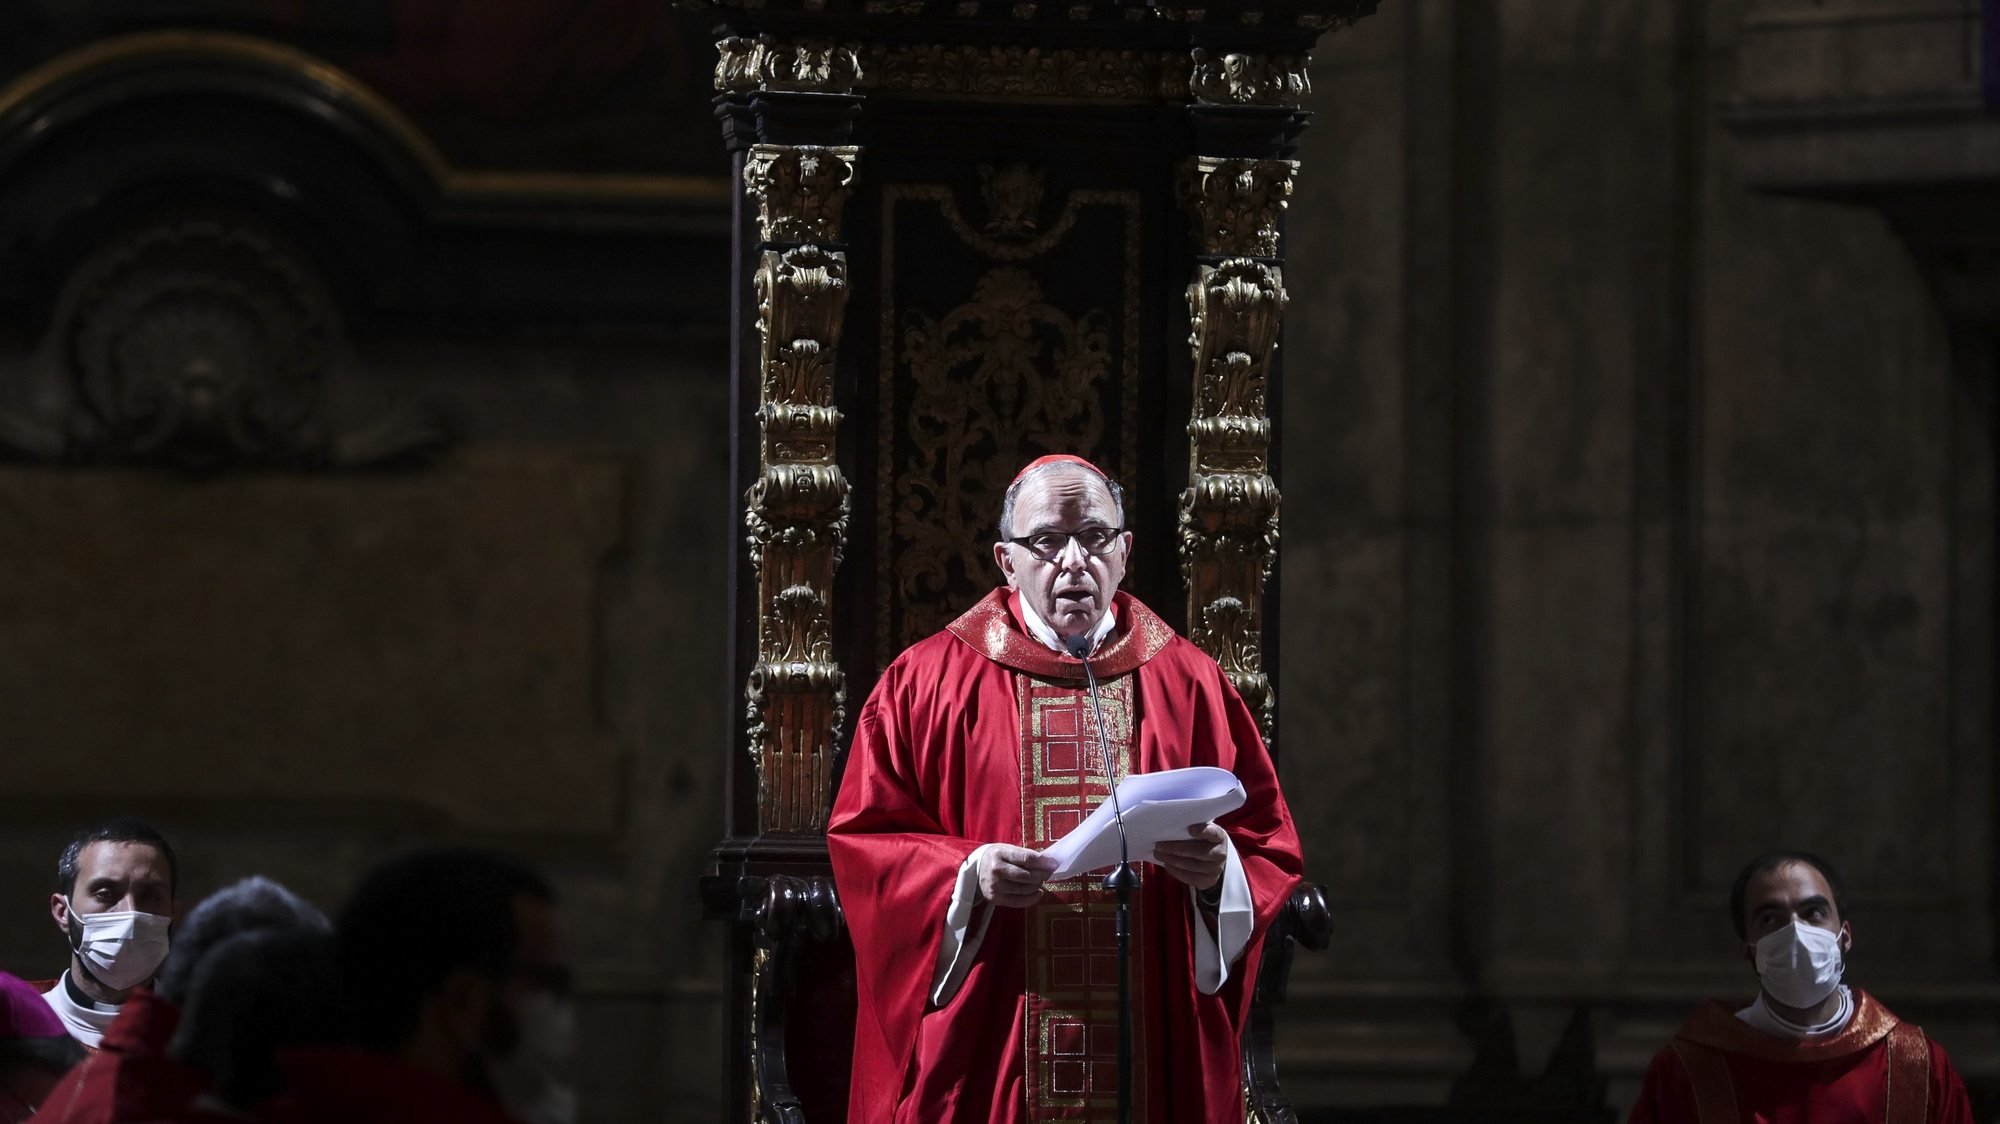 O cardeal patriarca de Lisboa, Manuel Clemente, lê a sua homilia durante o ritual da prostração na missa pascal da Paixão do Senhor, na Sé de Lisboa, 15 de abril de 2022. TIAGO PETINGA/LUSA